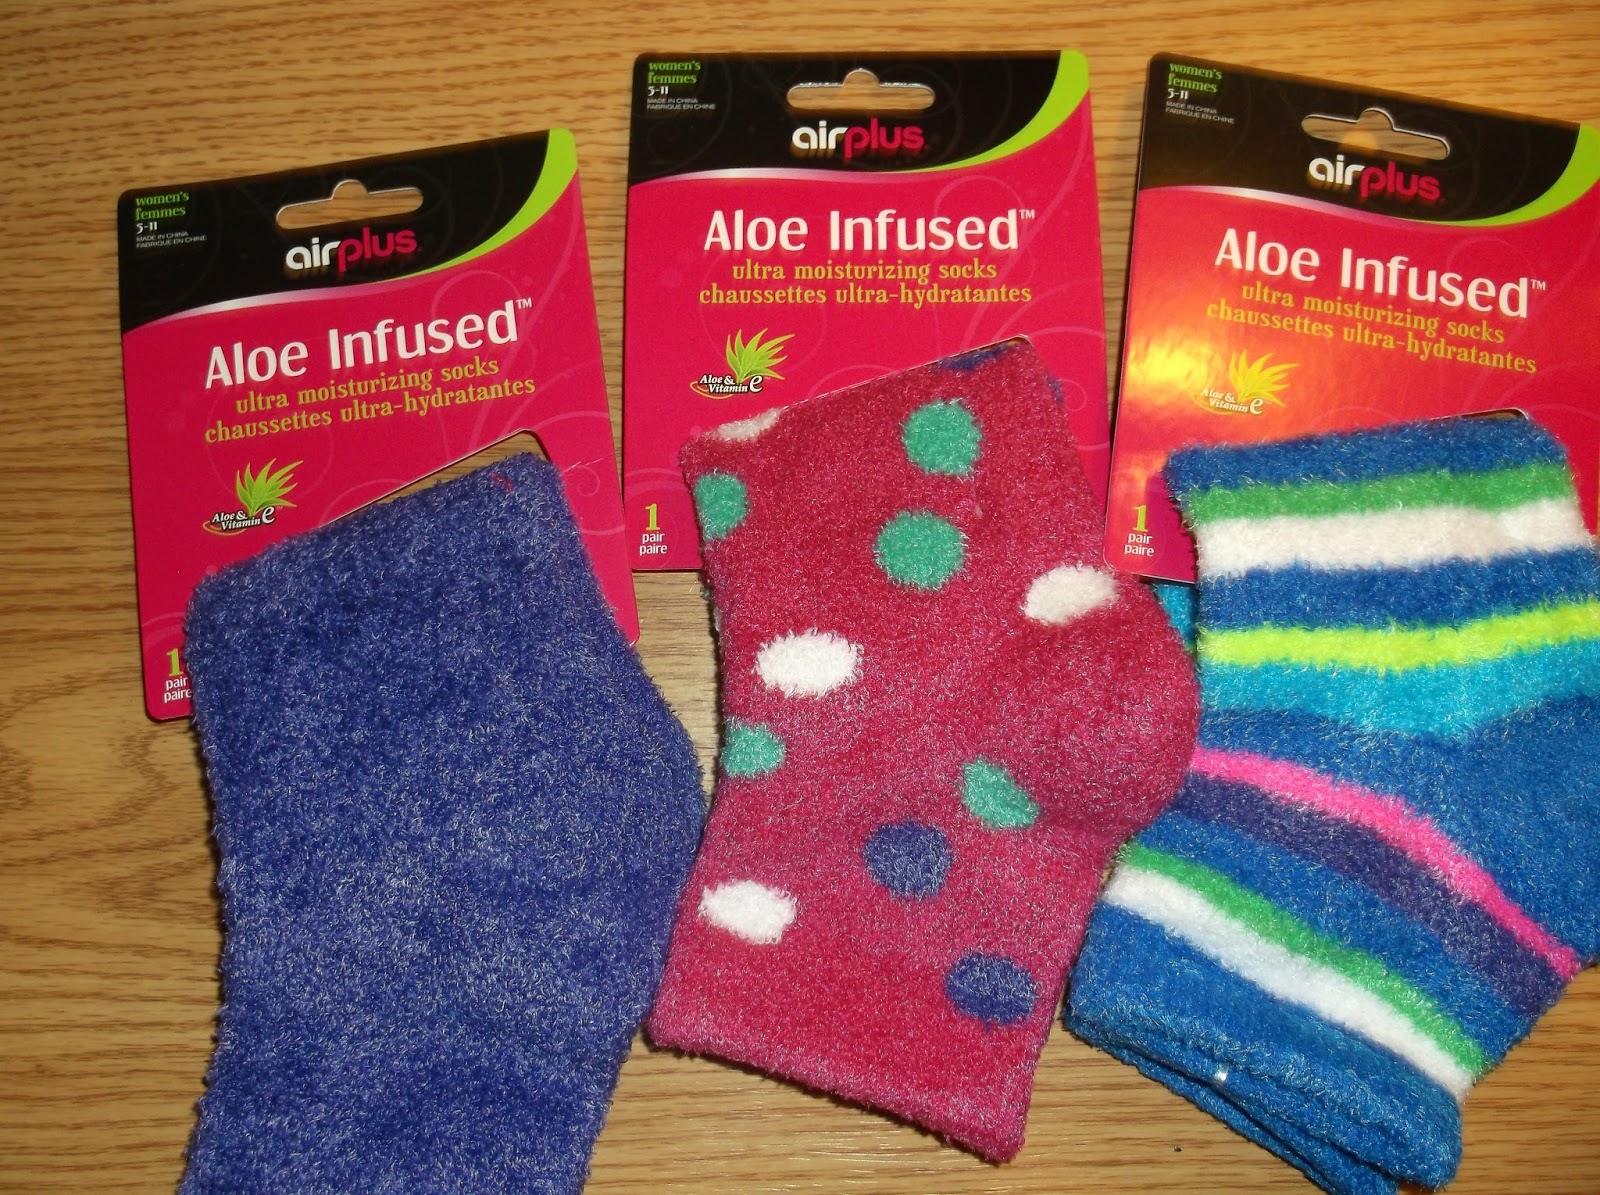 Missy's Product Reviews : Airplus Hug My Heels and Aloe Infused Socks ...